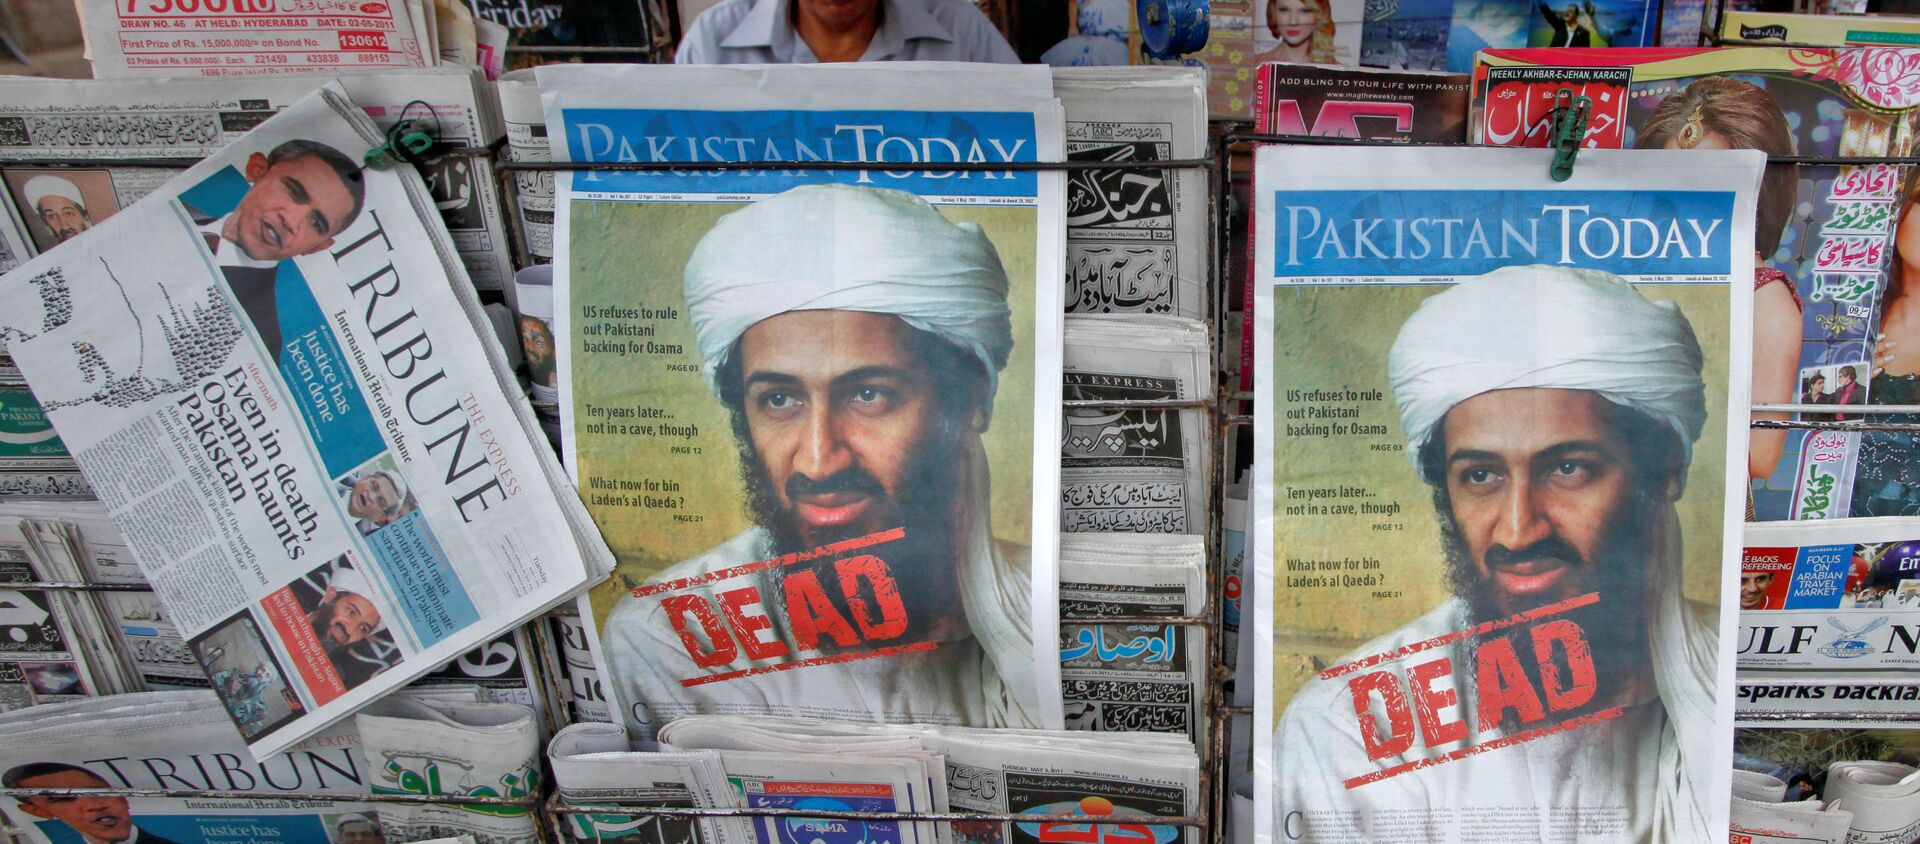 3 Mayıs 2011'de Kaide lideri Usame bin Ladin'in öldürüldüğü haberi Pakistan gazetelerinin manşetlerinde - Sputnik Türkiye, 1920, 30.04.2018